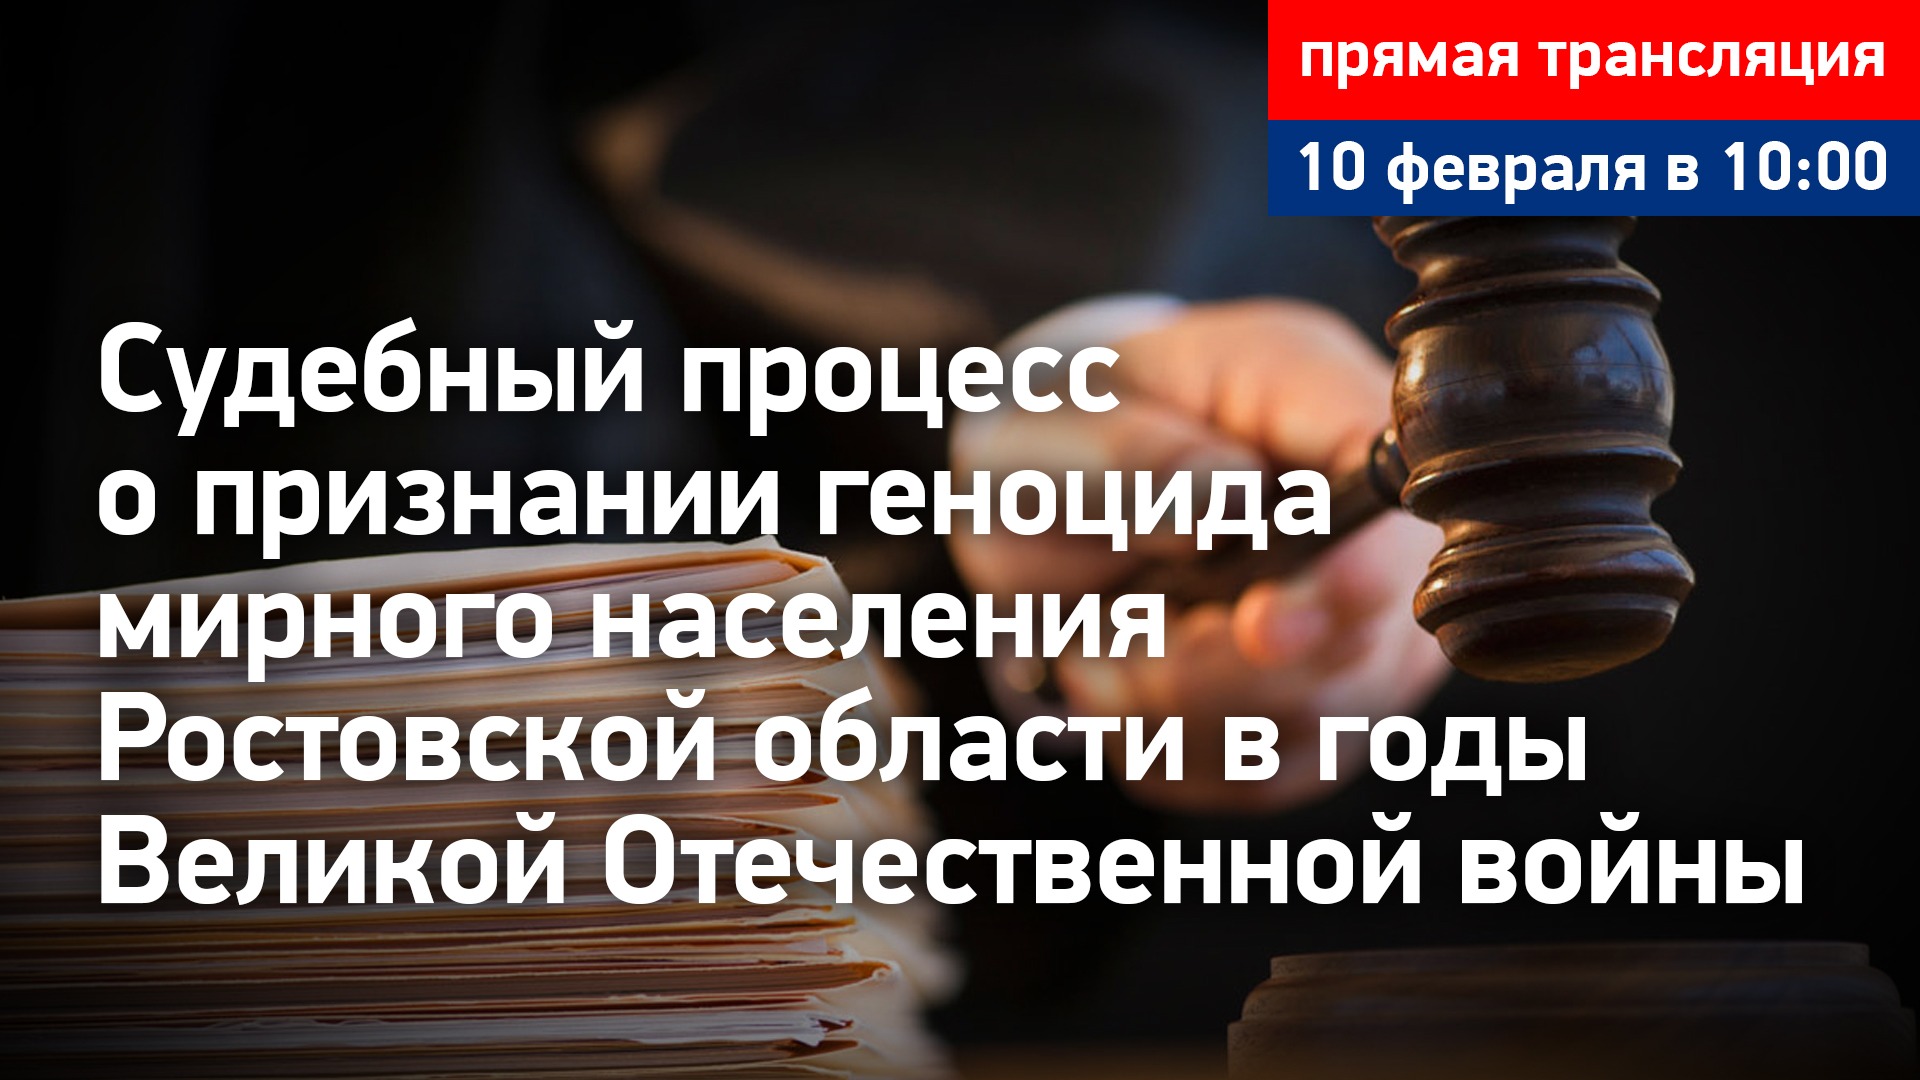 Судебный процесс о признании геноцида мирного населения Ростовской области. Прямая трансляция